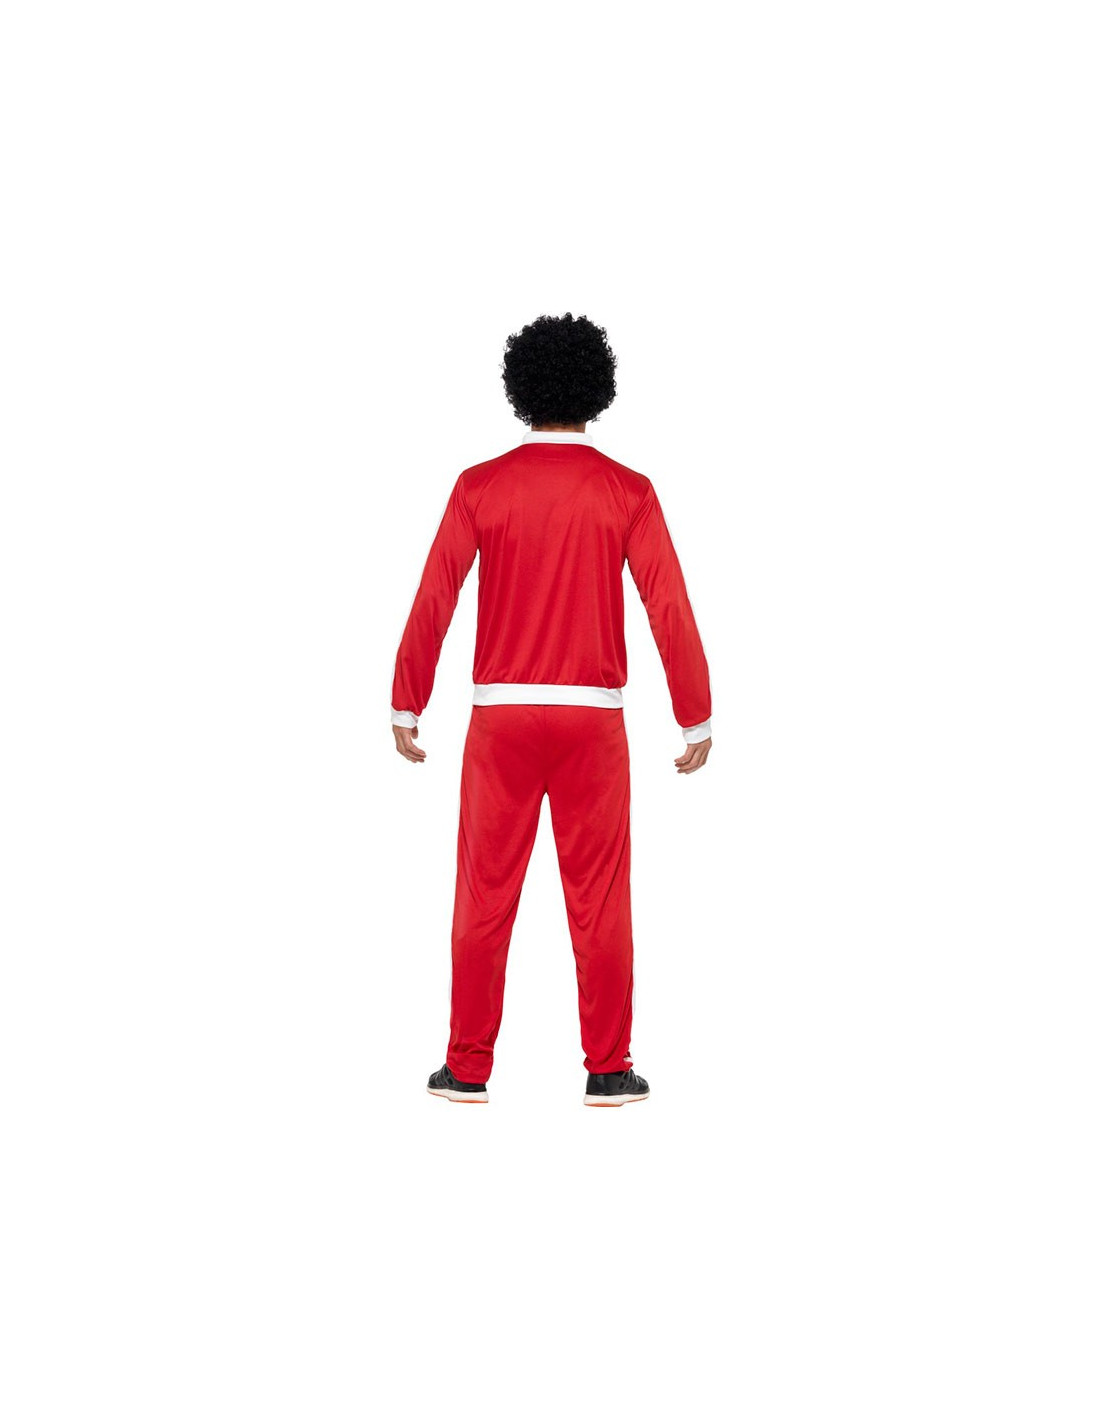 Disfraz chándal rojo años 80 hombre - Comprar en Tienda Disfraces Bacanal